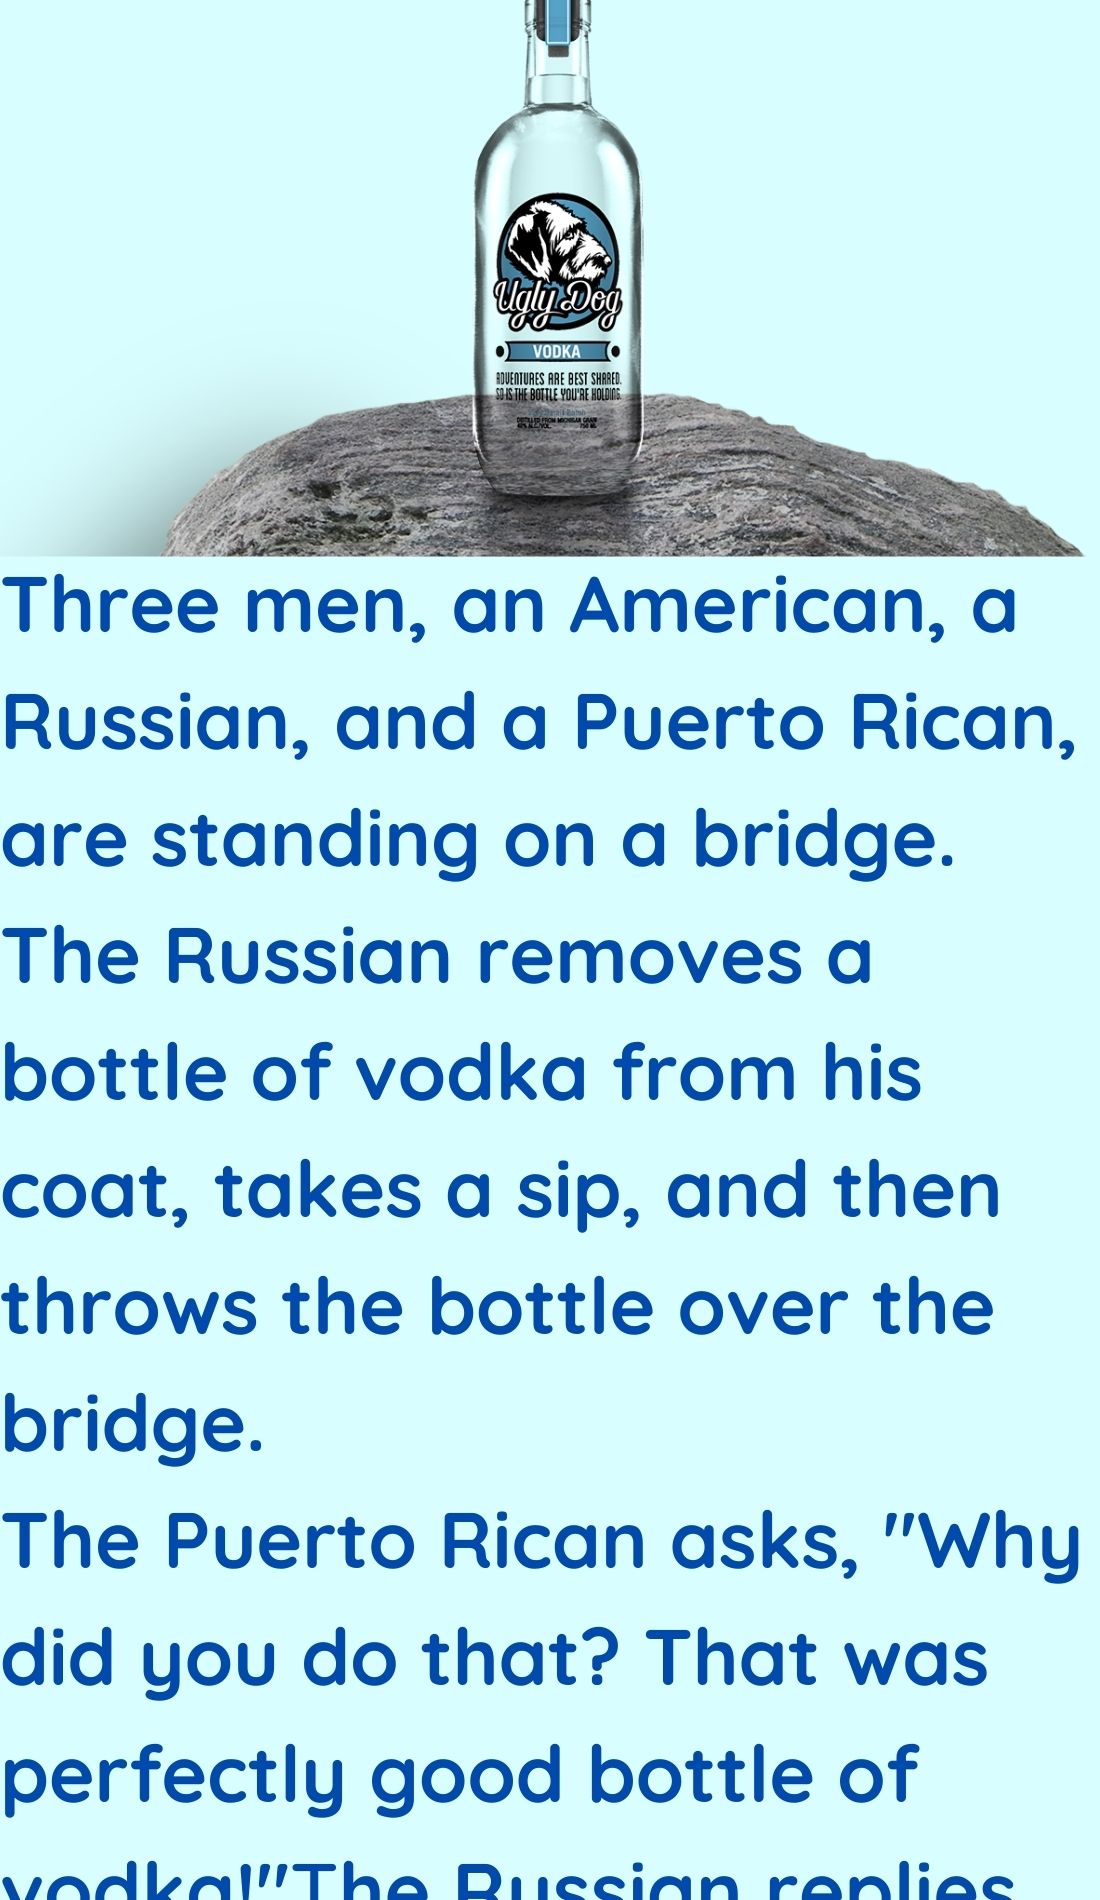 A Bottle of Vodka in Coat